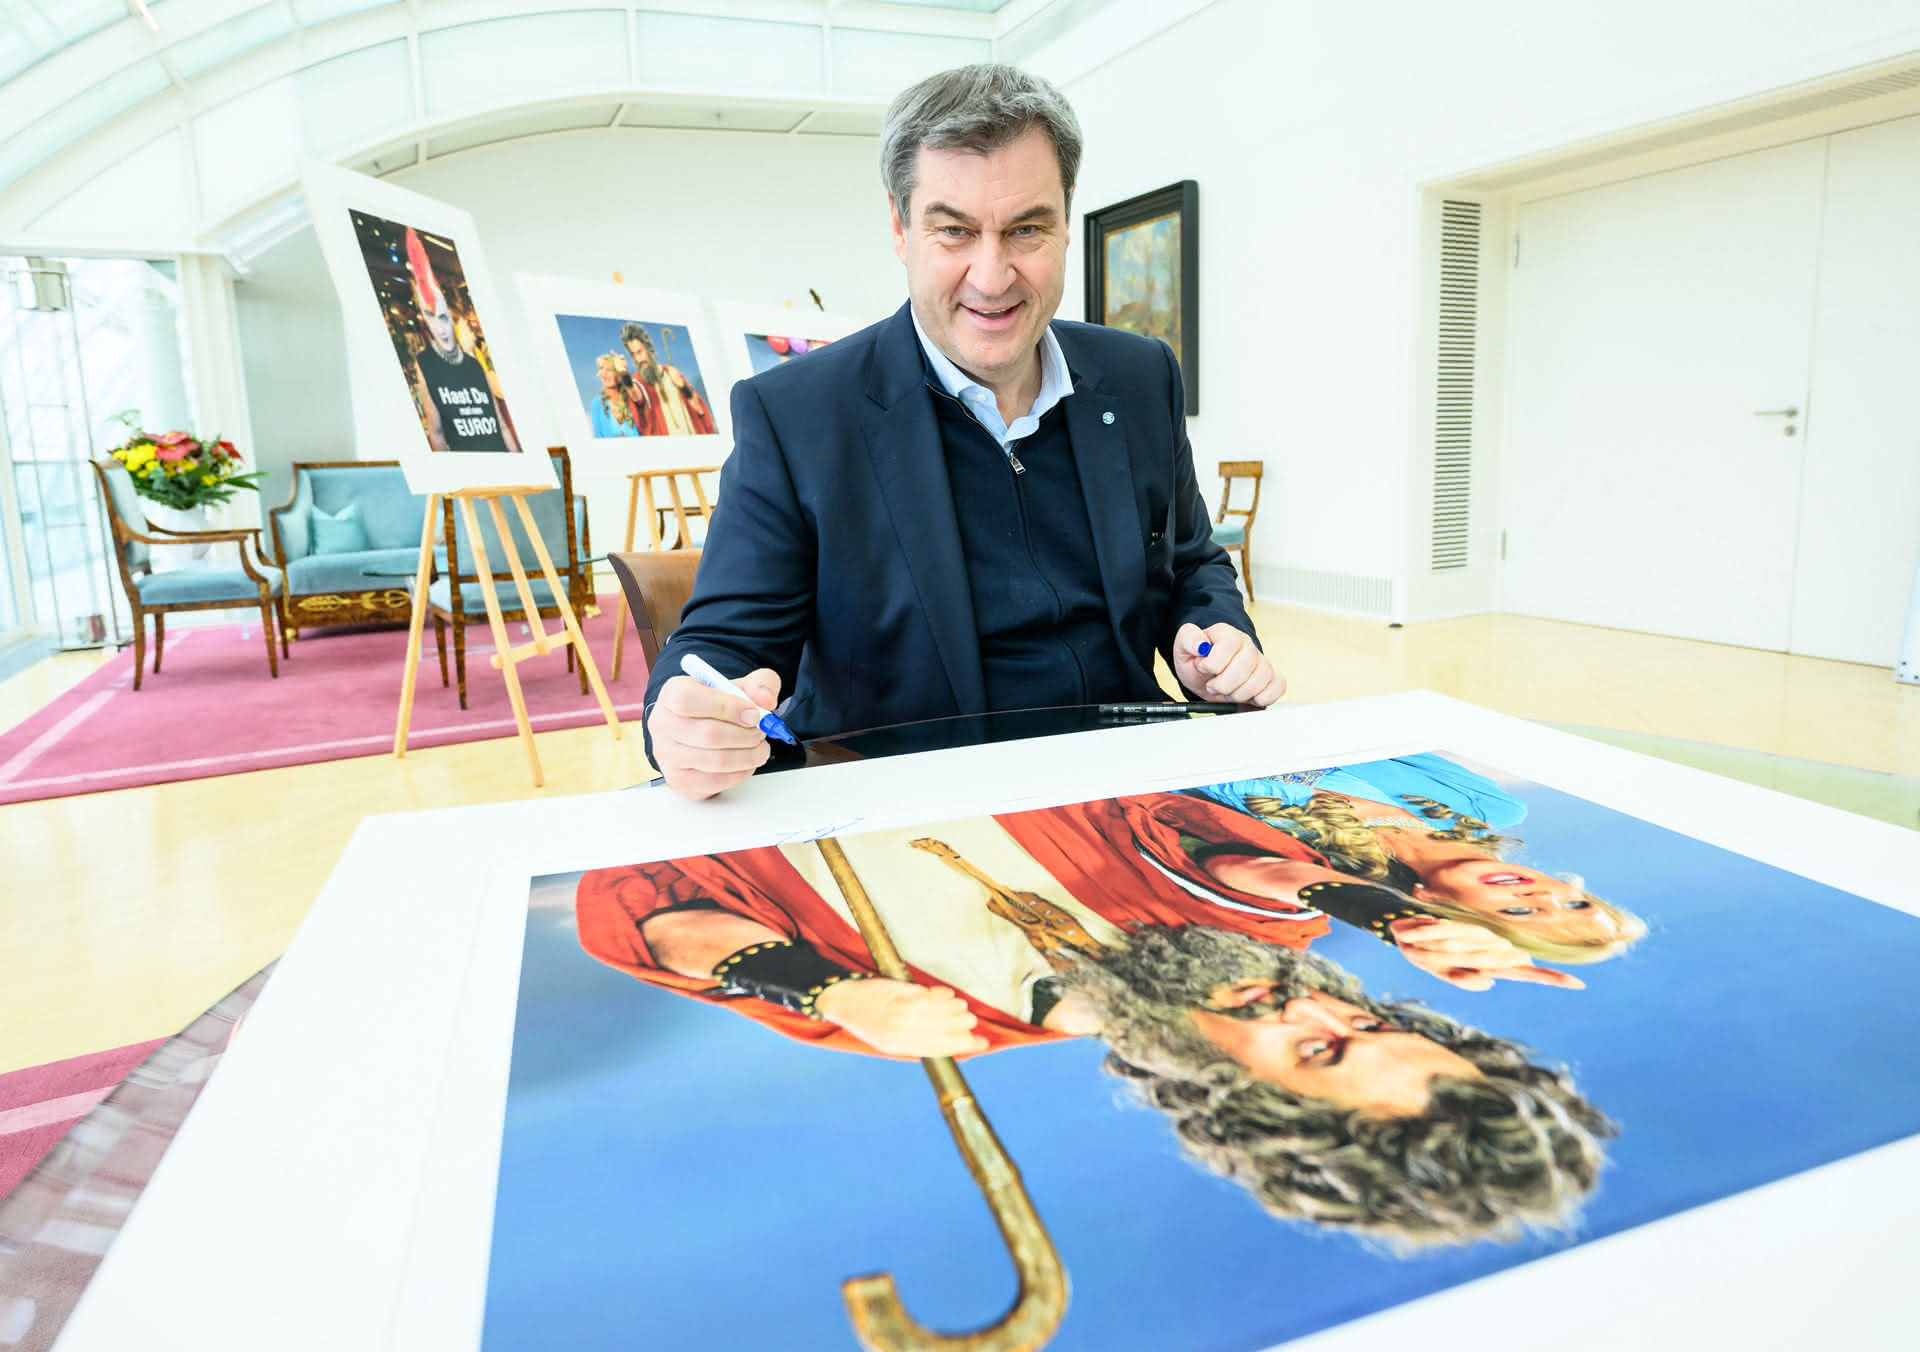 Bayerns Ministerpräsident Dr. Markus Söder signiert einen großen Kunstfotodruck auf einem Tisch, der später bei einer Charity Auktion angeboten wird, mit weiteren ausgestellten Bildern im Hintergrund.